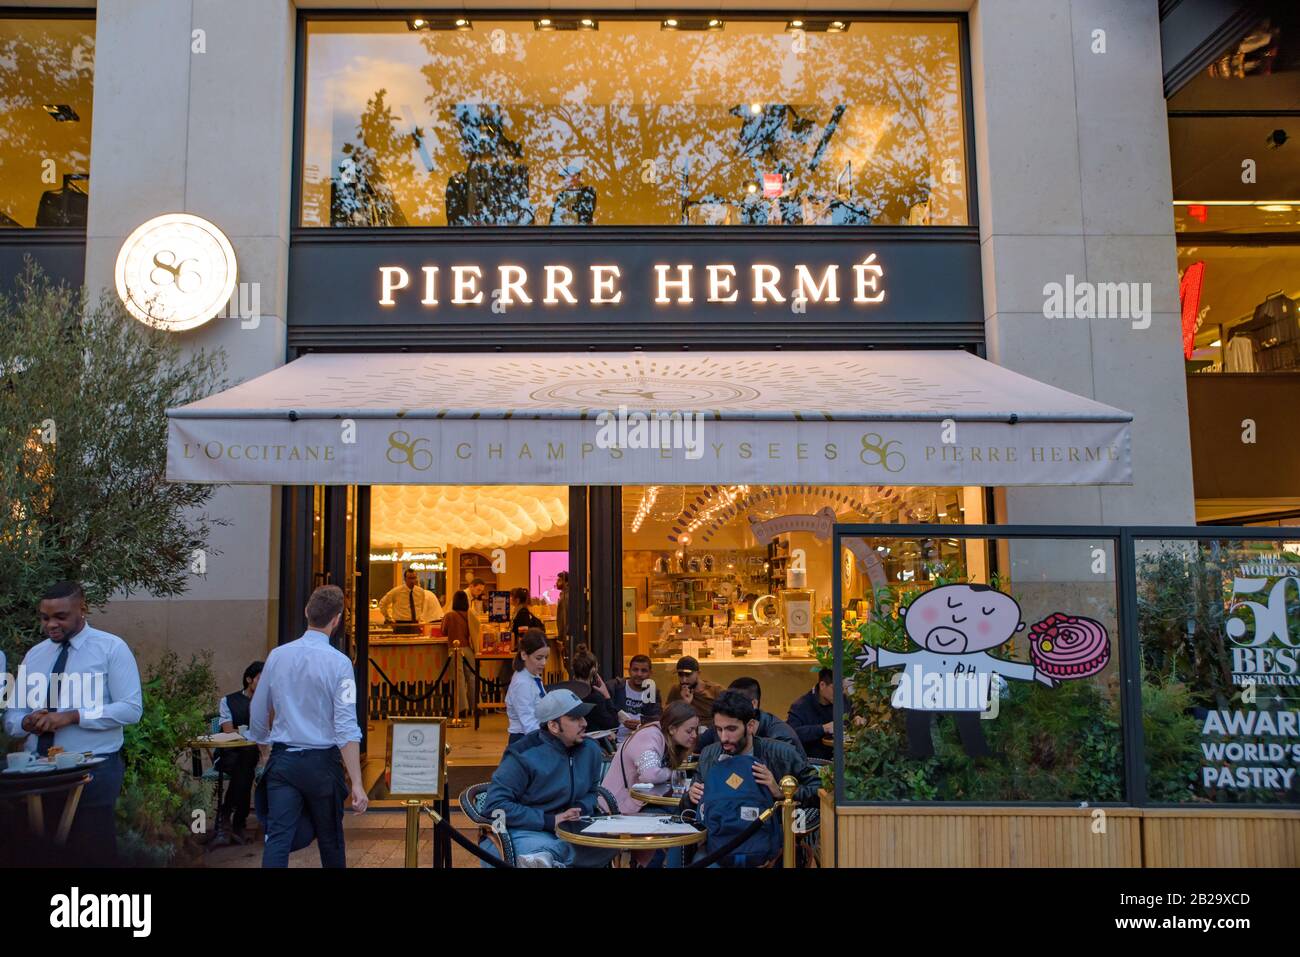 Il negozio degli Champs Élysées di Pierre Hermé, uno dei più famosi dessert francesi di Parigi, in Francia Foto Stock